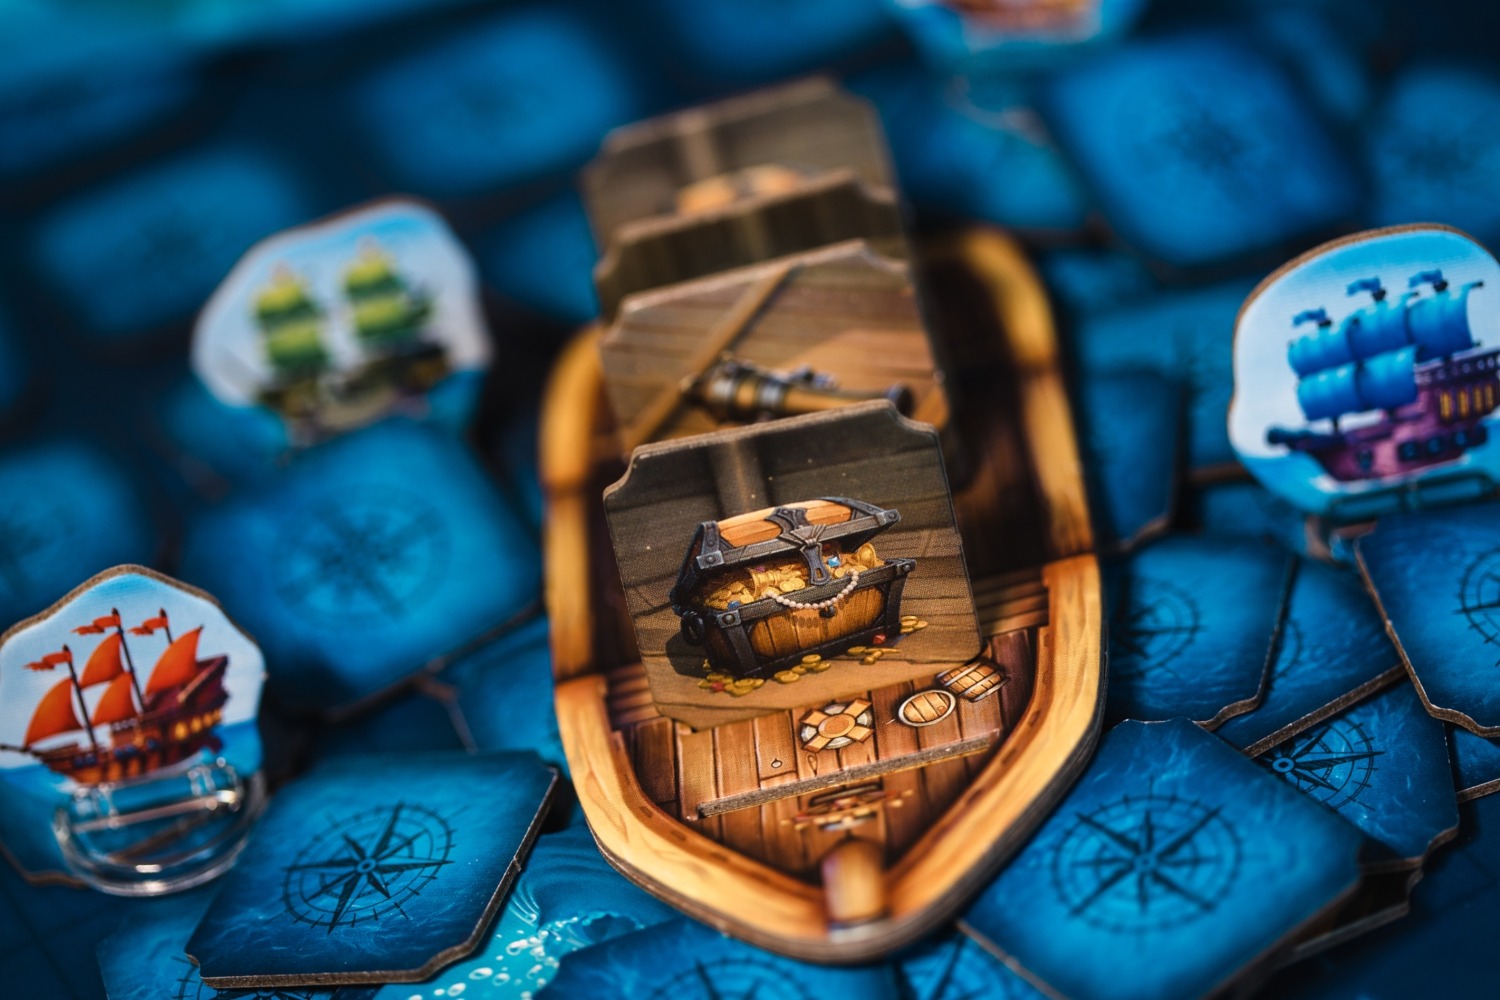 Lifestyleboard game trésors légendaires jeu de société boardgame blackrock jeu enfant famille pirate